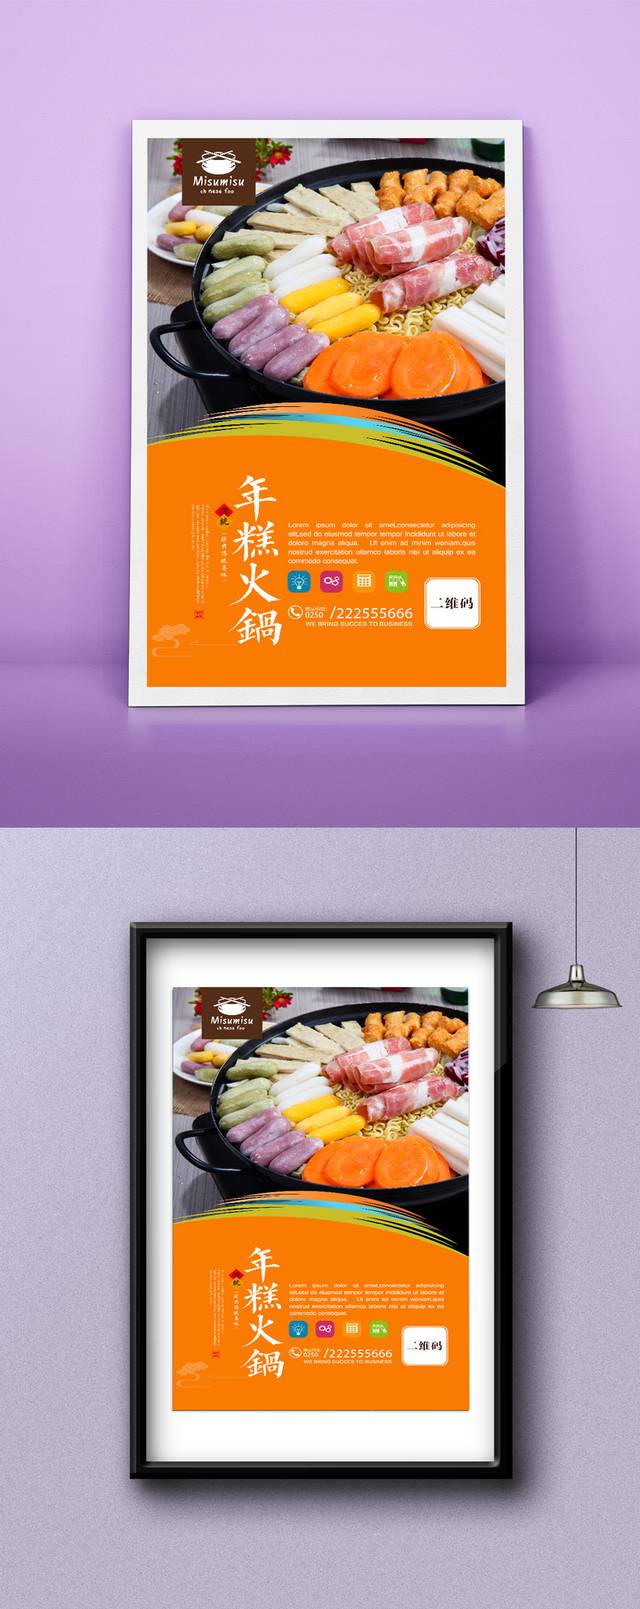 韩式年糕火锅宣传海报设计